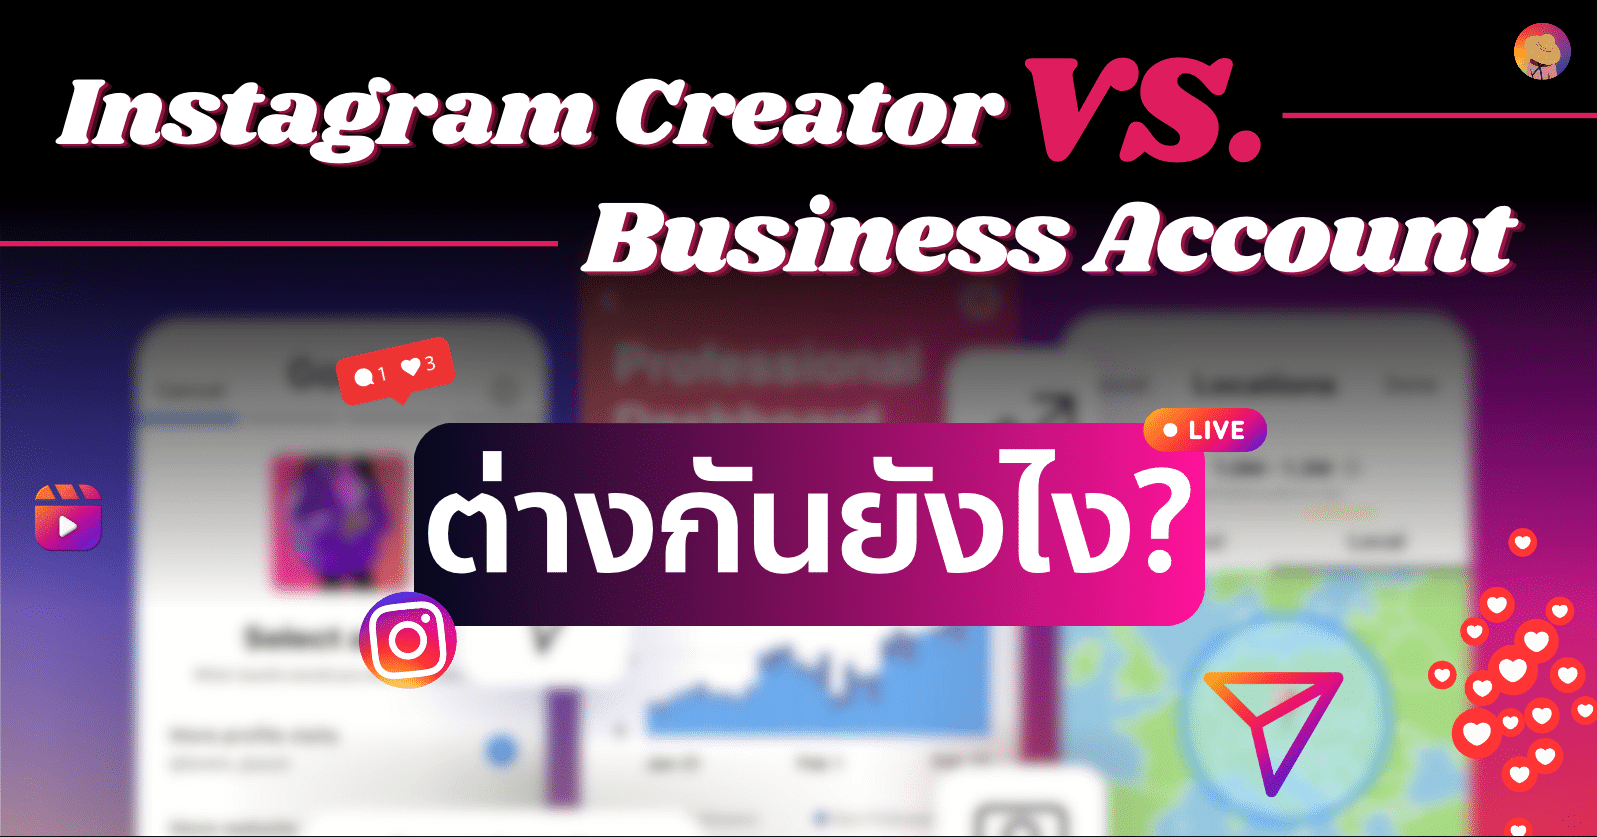 การใช้บัญชี Instagram Creator vs. Business Account ต่างกันยังไง?